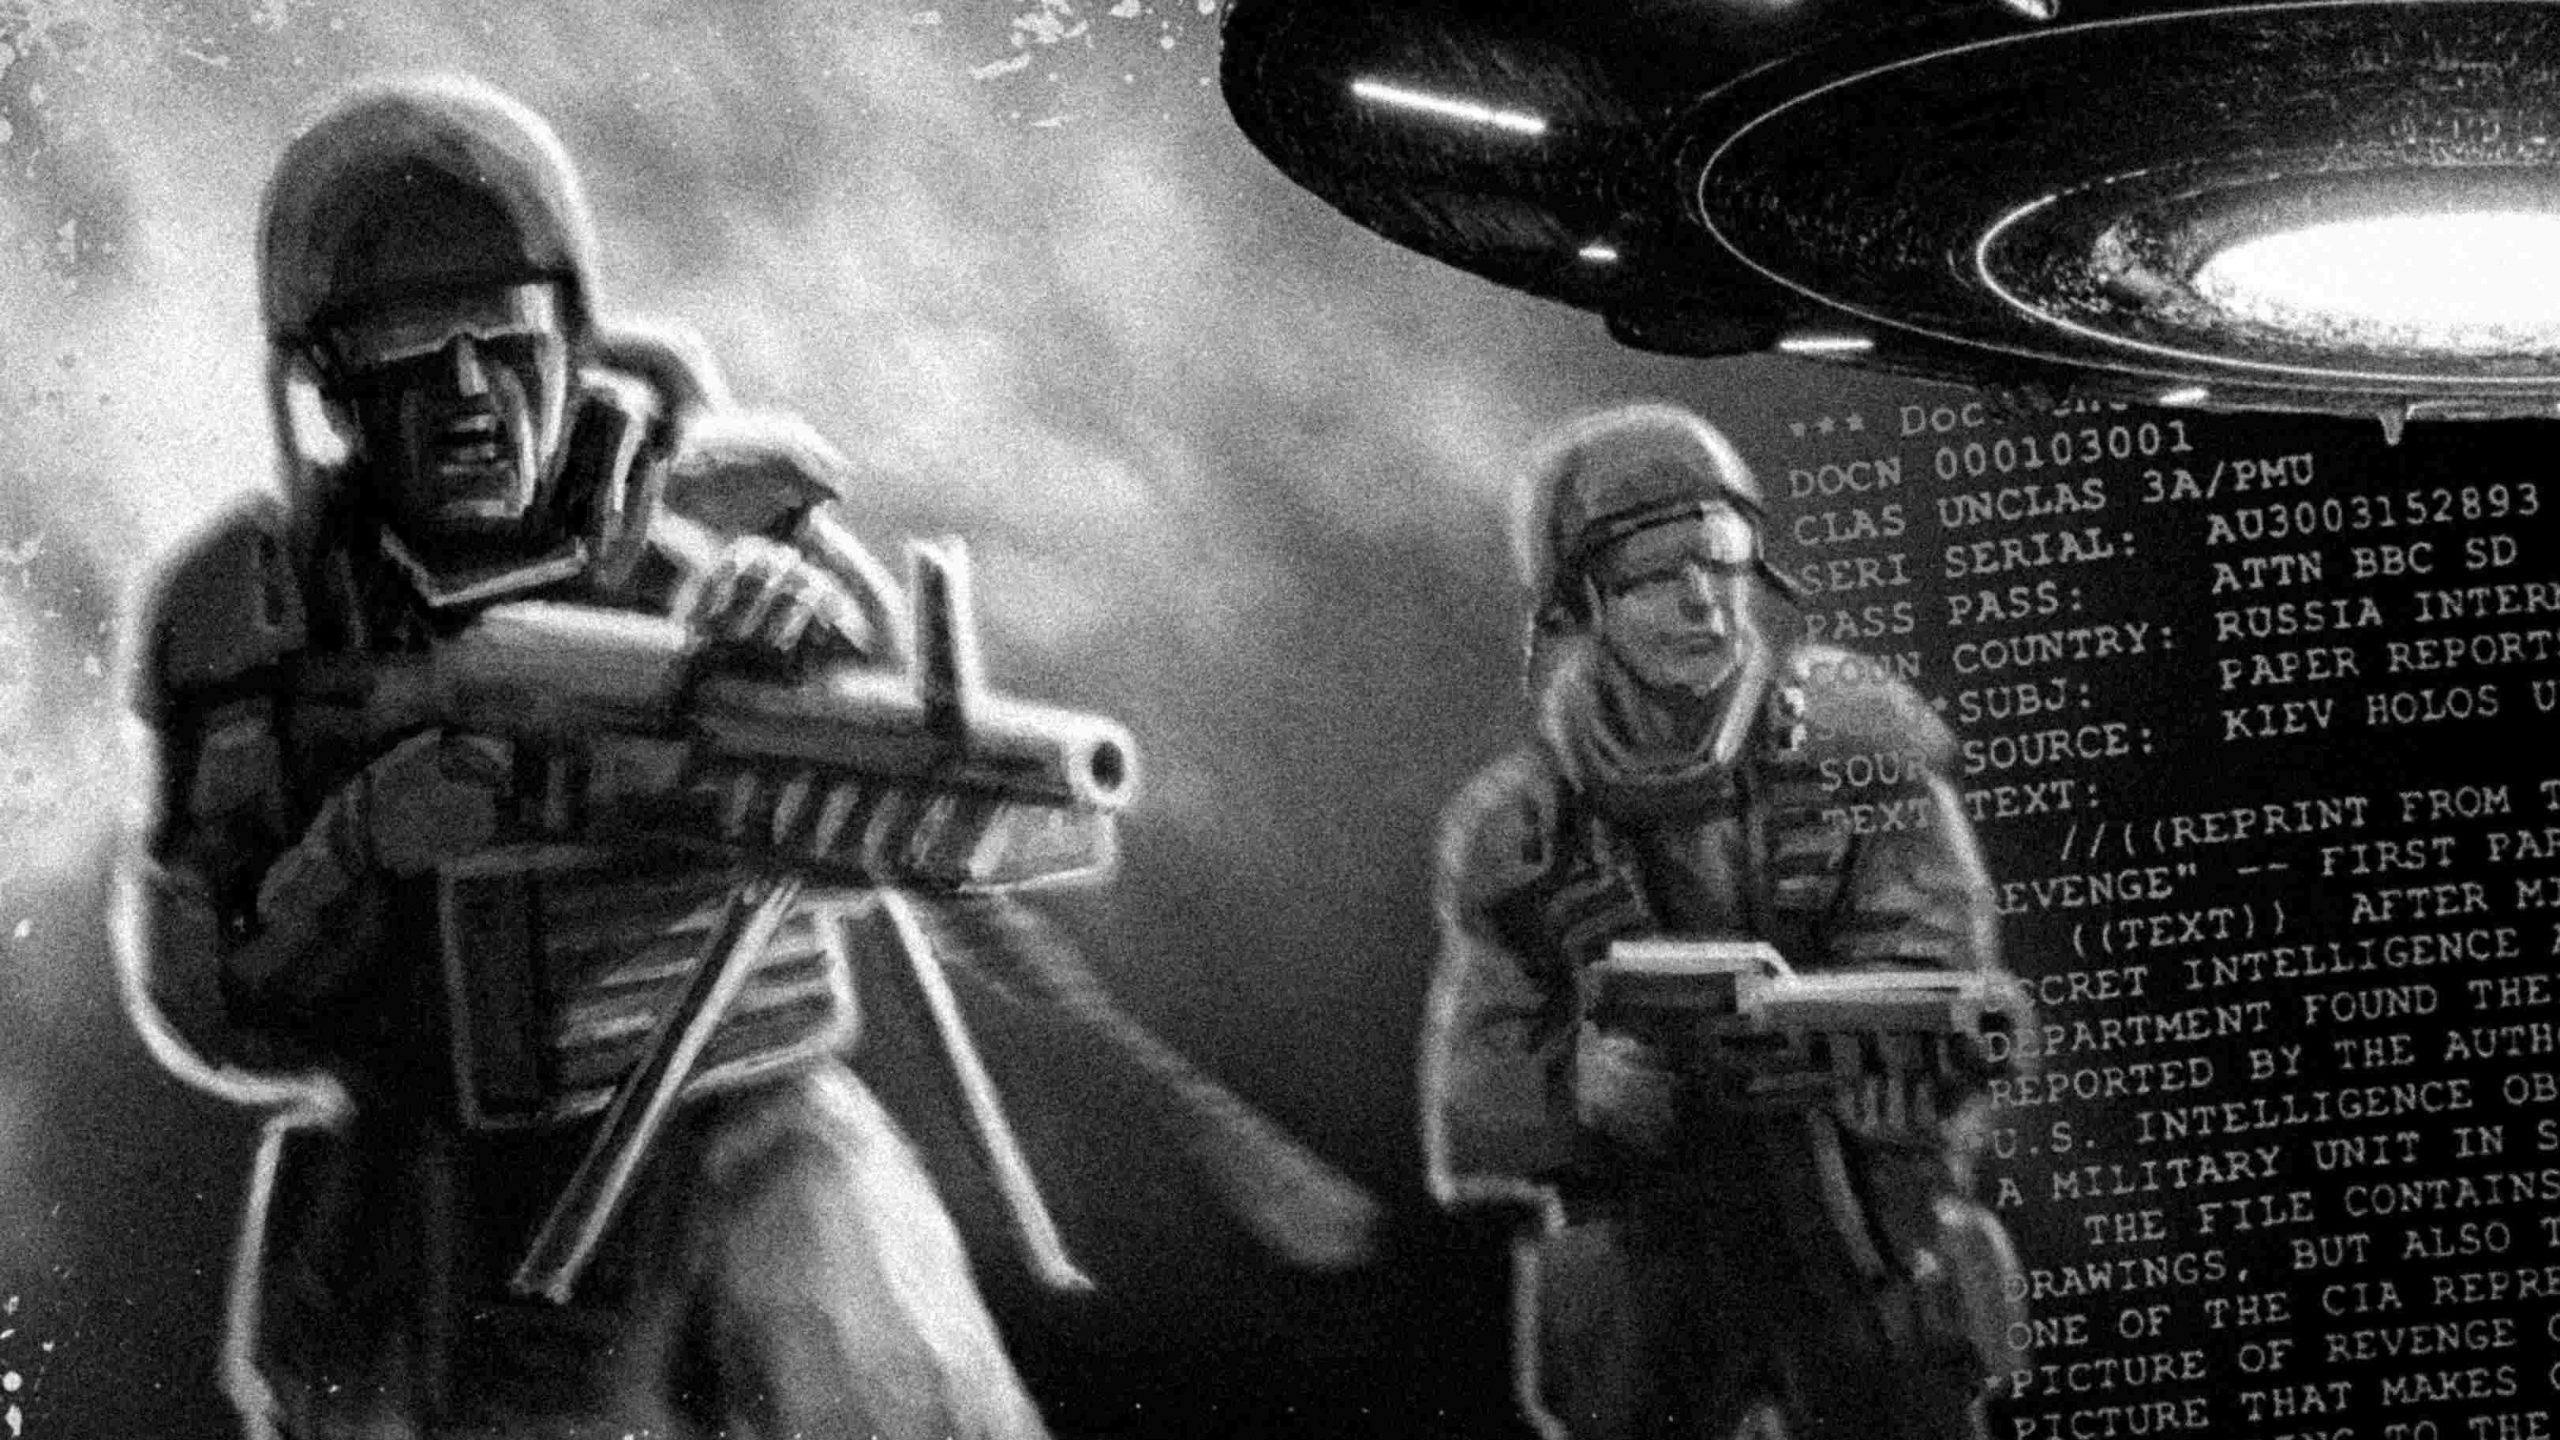 Uzaylı saldırısının ardından "23 Rus askeri taşa döndü" - CIA belgesi ortaya çıktı 1